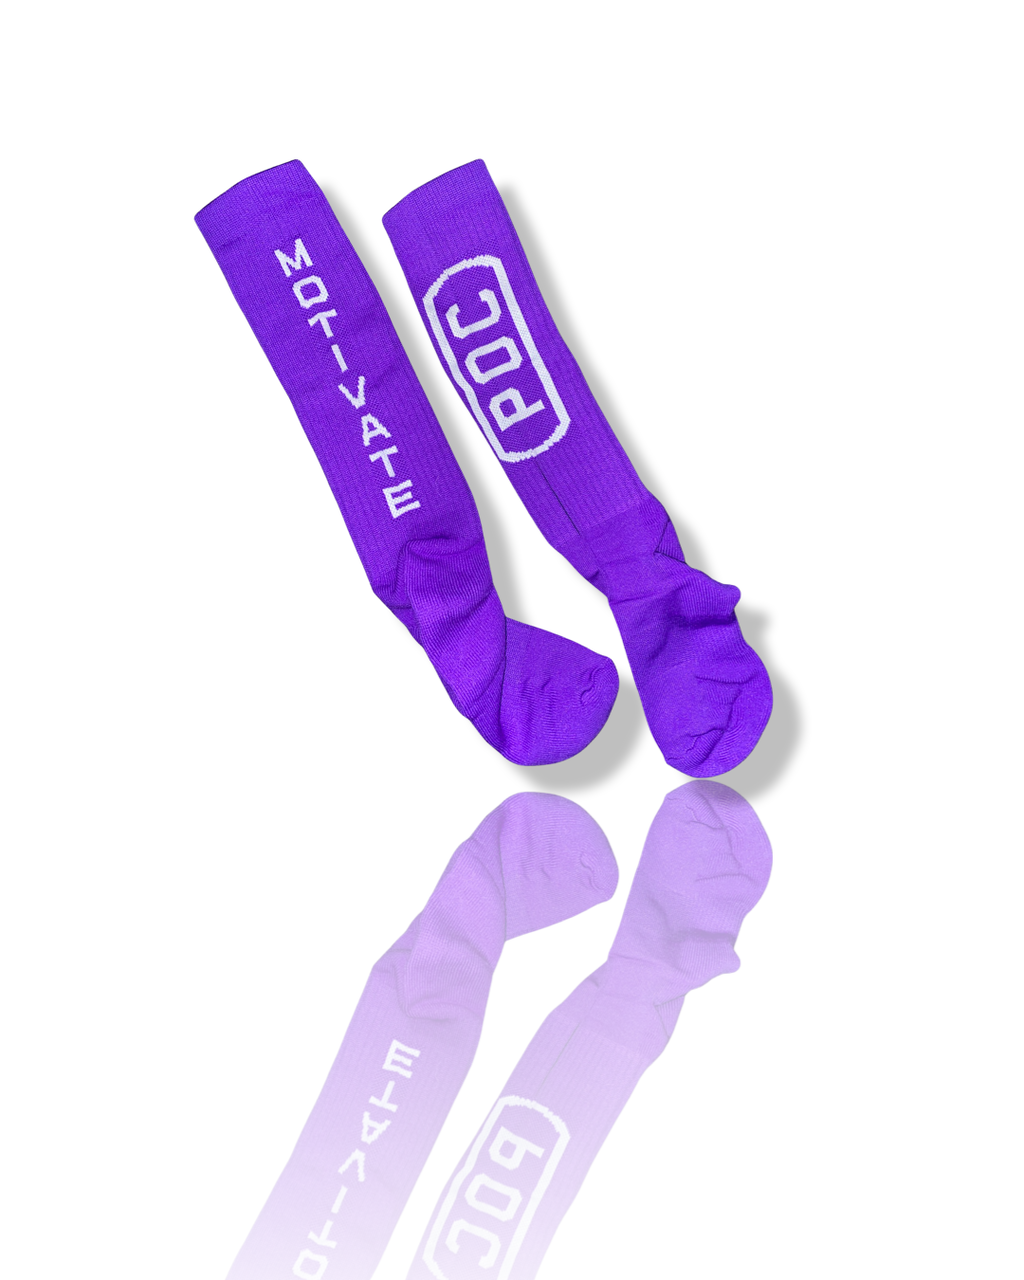 O4D Royal Purple Over-the-Calf Socks